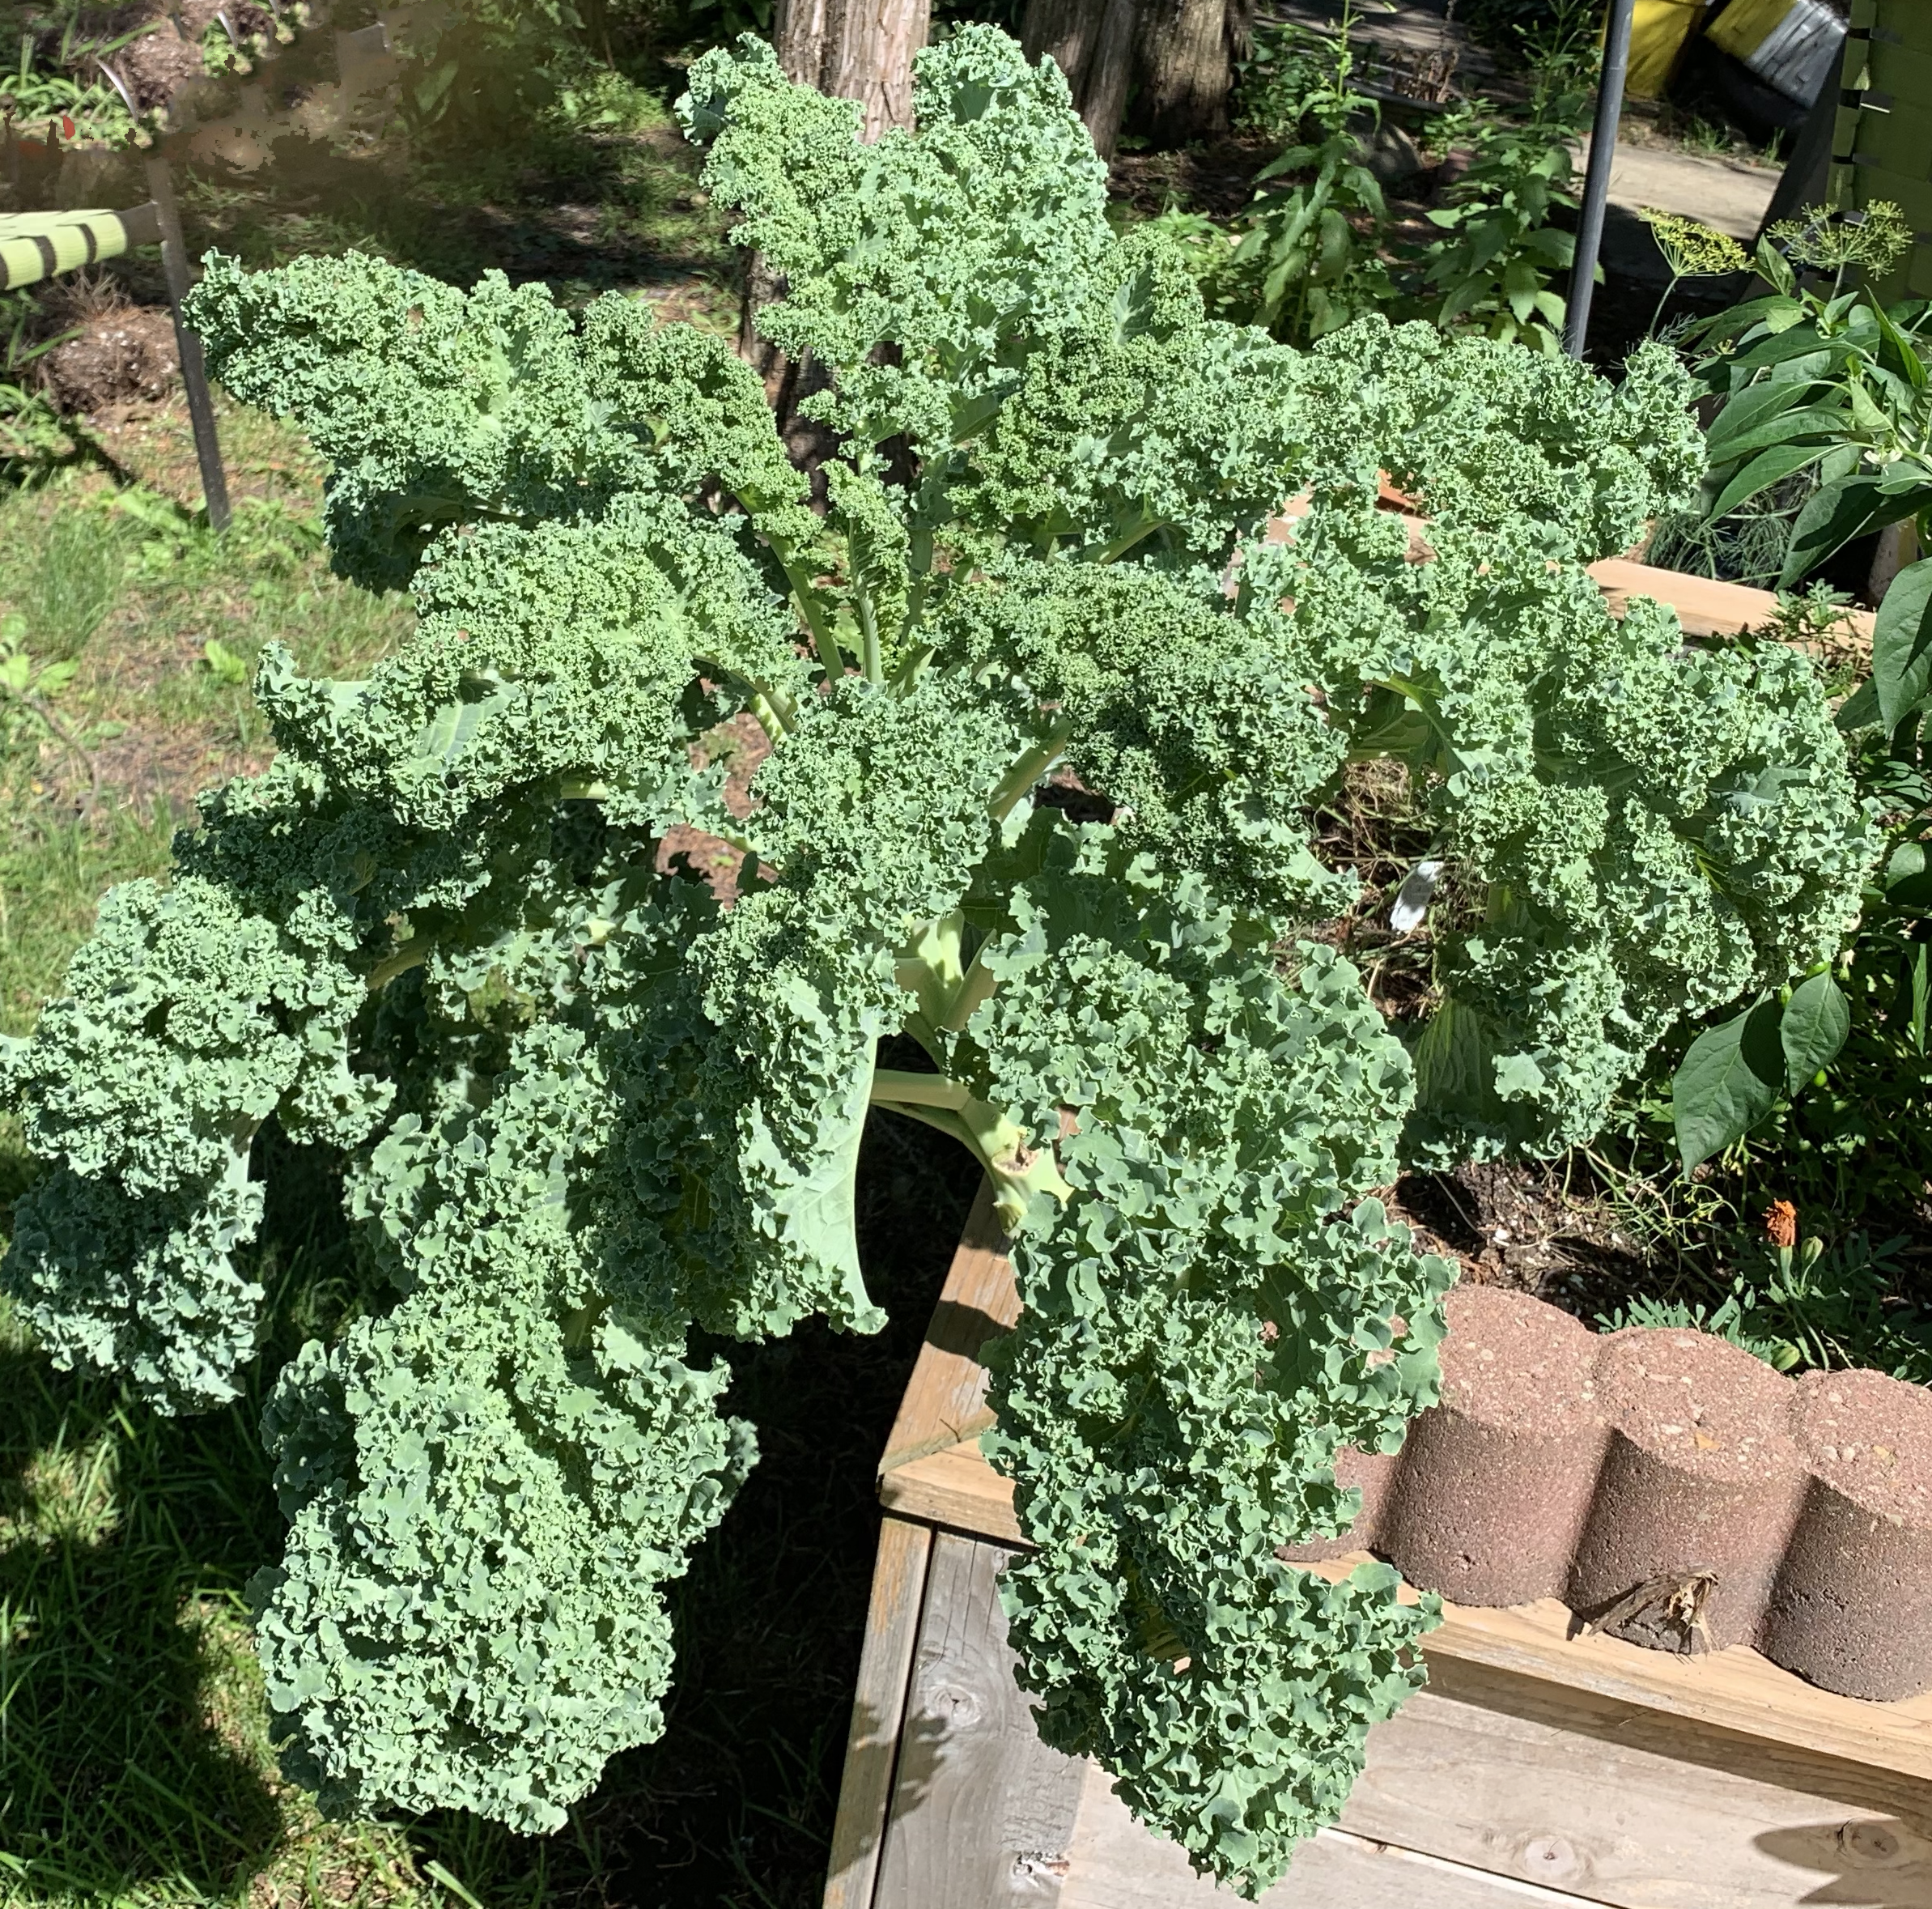  Kale growing in Elmhurst, IL 